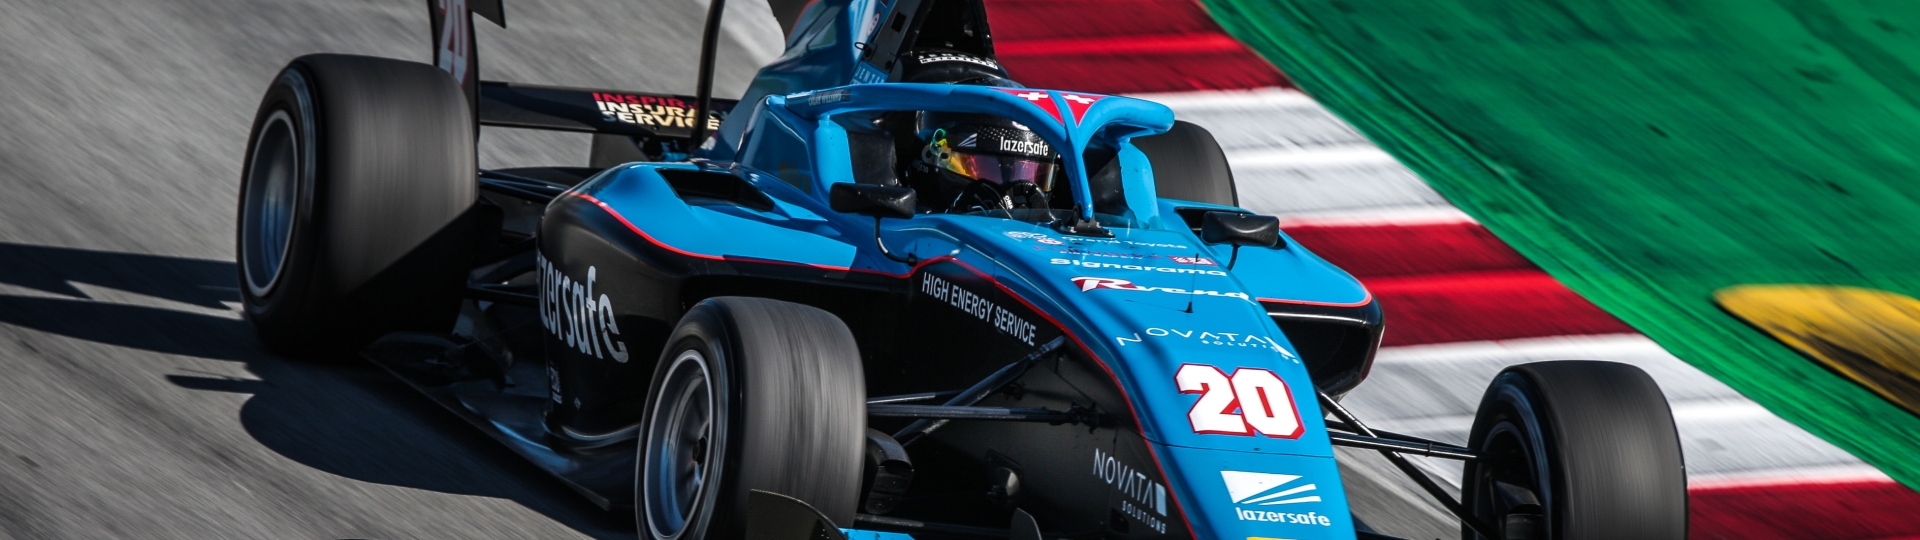 Calan Williams Race Car